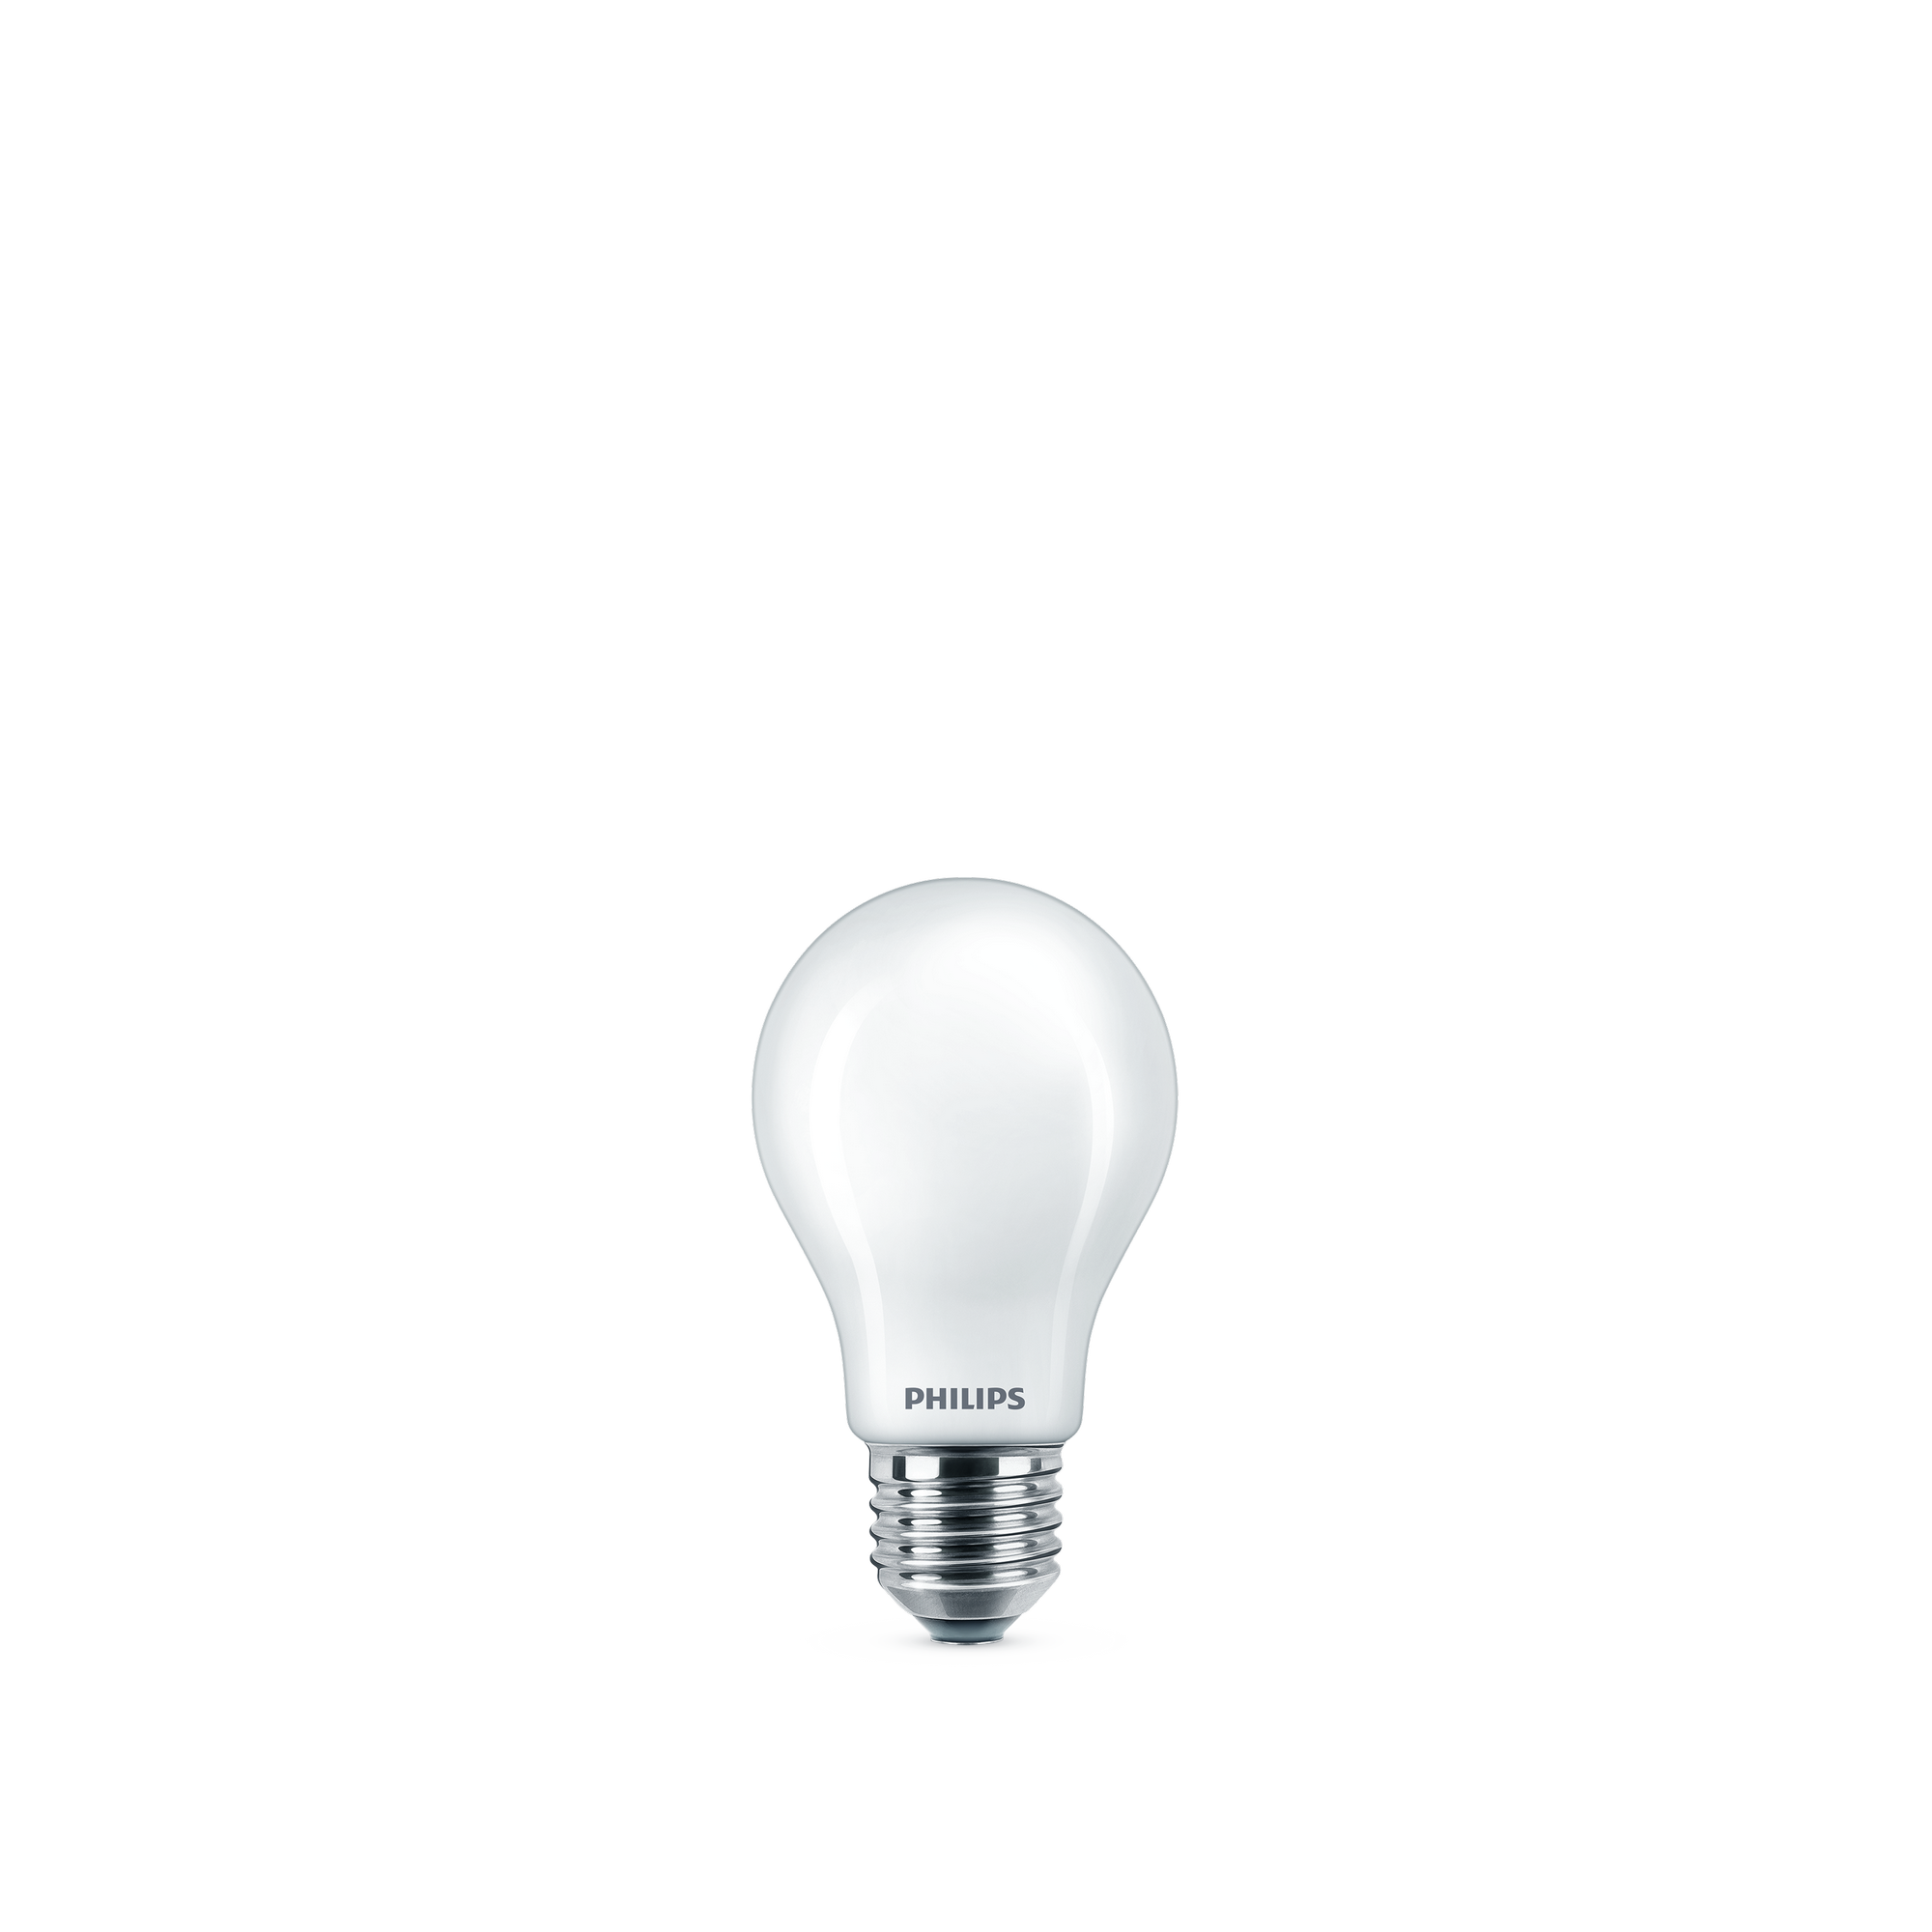 LED Lampe 7 W E27 neutralweiß 806 lm matt + product picture